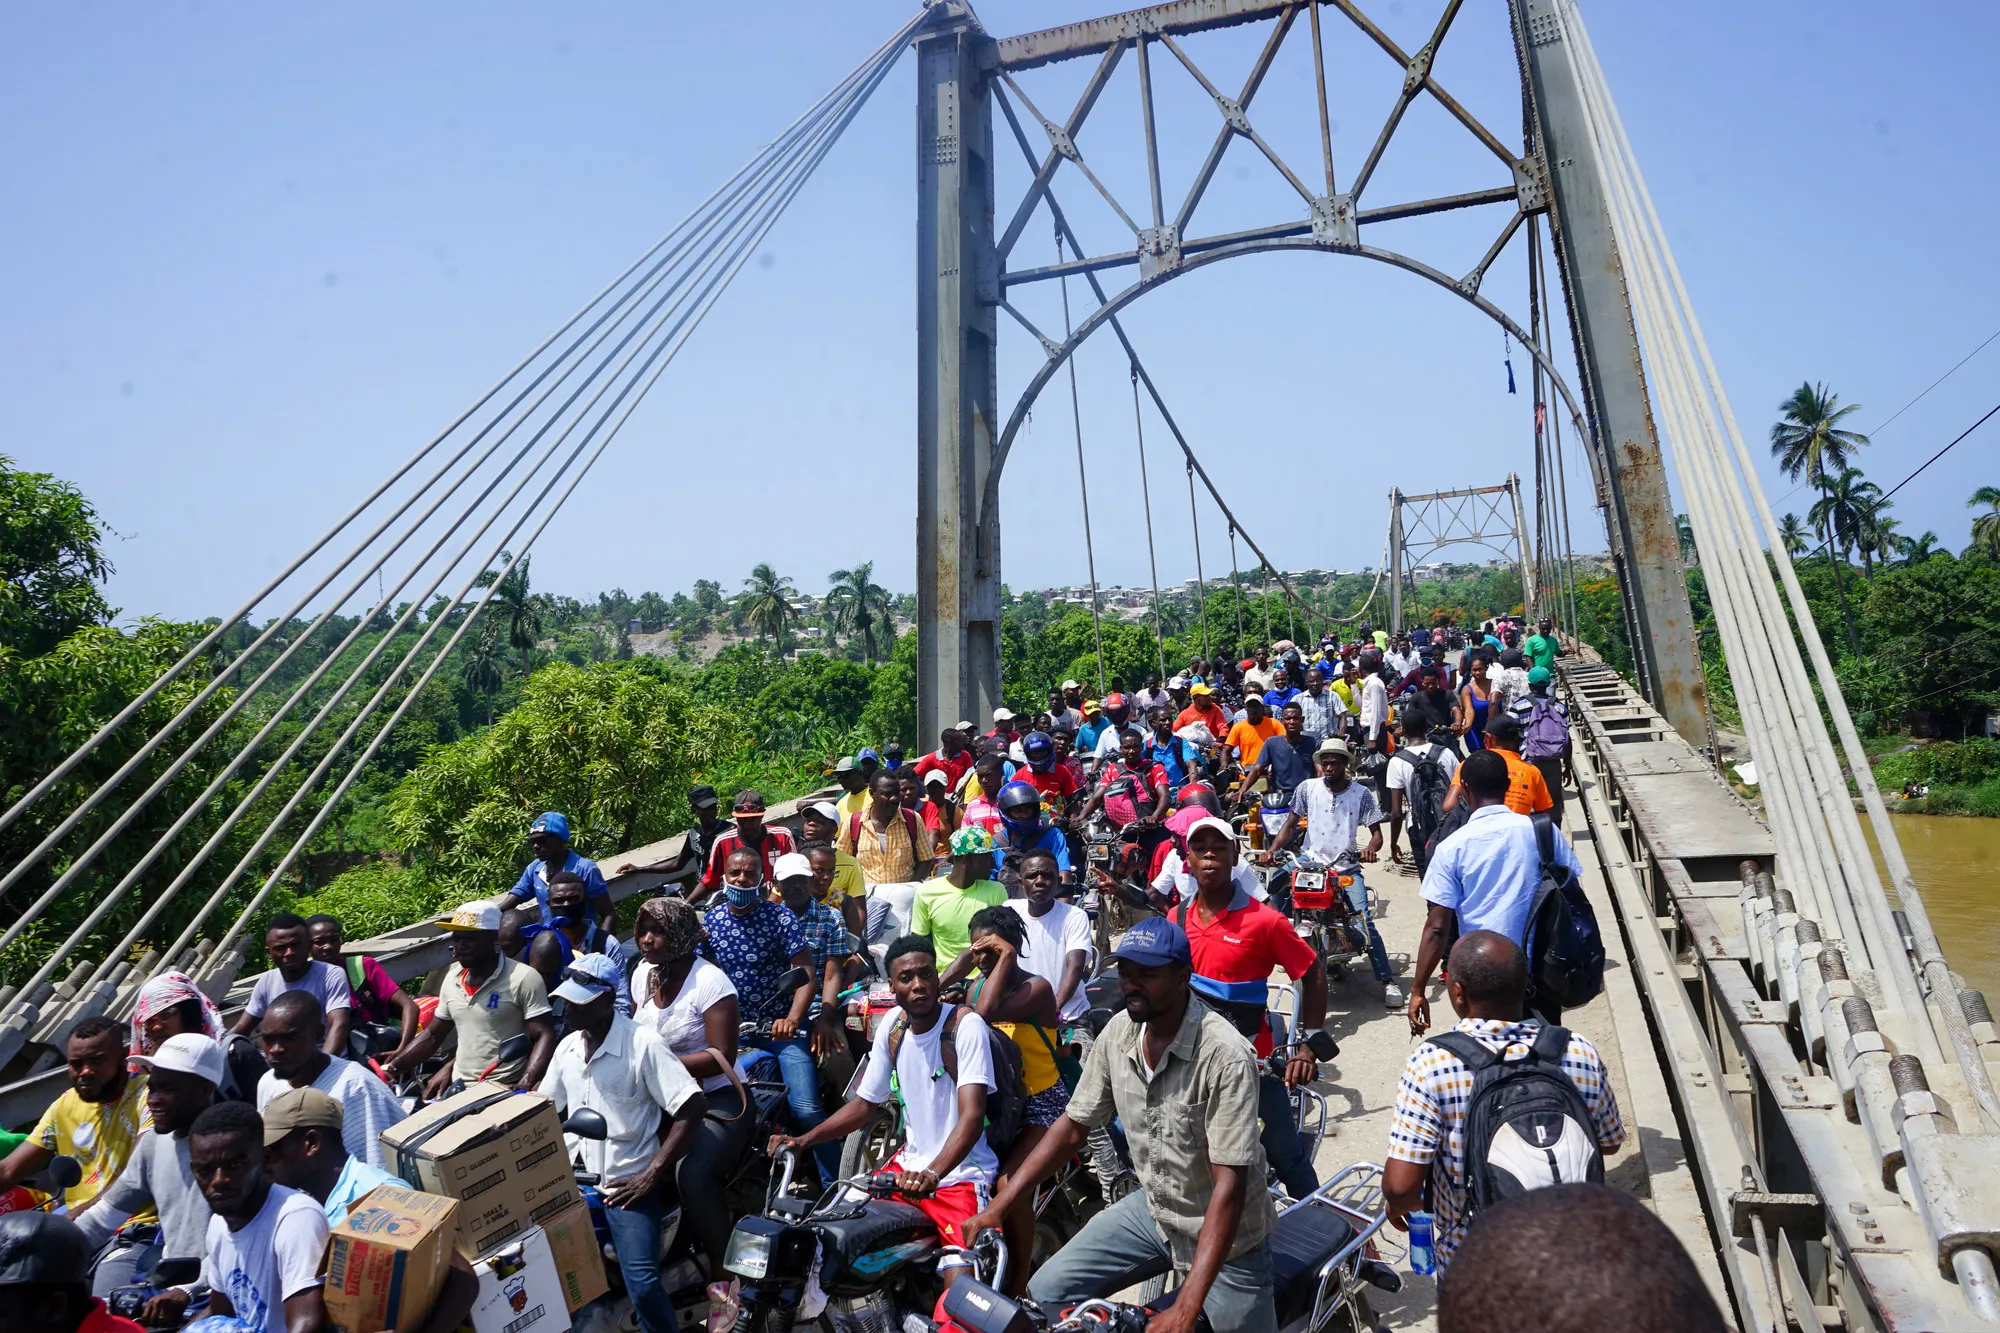 Personas fotografiadas en y cerca del puente Dumarsais Estime, donde los peatones y algunos vehículos más pequeños pueden pasar, pero no camiones, a fines de agosto de 2021, después de que un terremoto de 7.2 causó estragos en Haití. El puente conecta la ciudad de Jèrèmie con el resto de las carreteras del país.